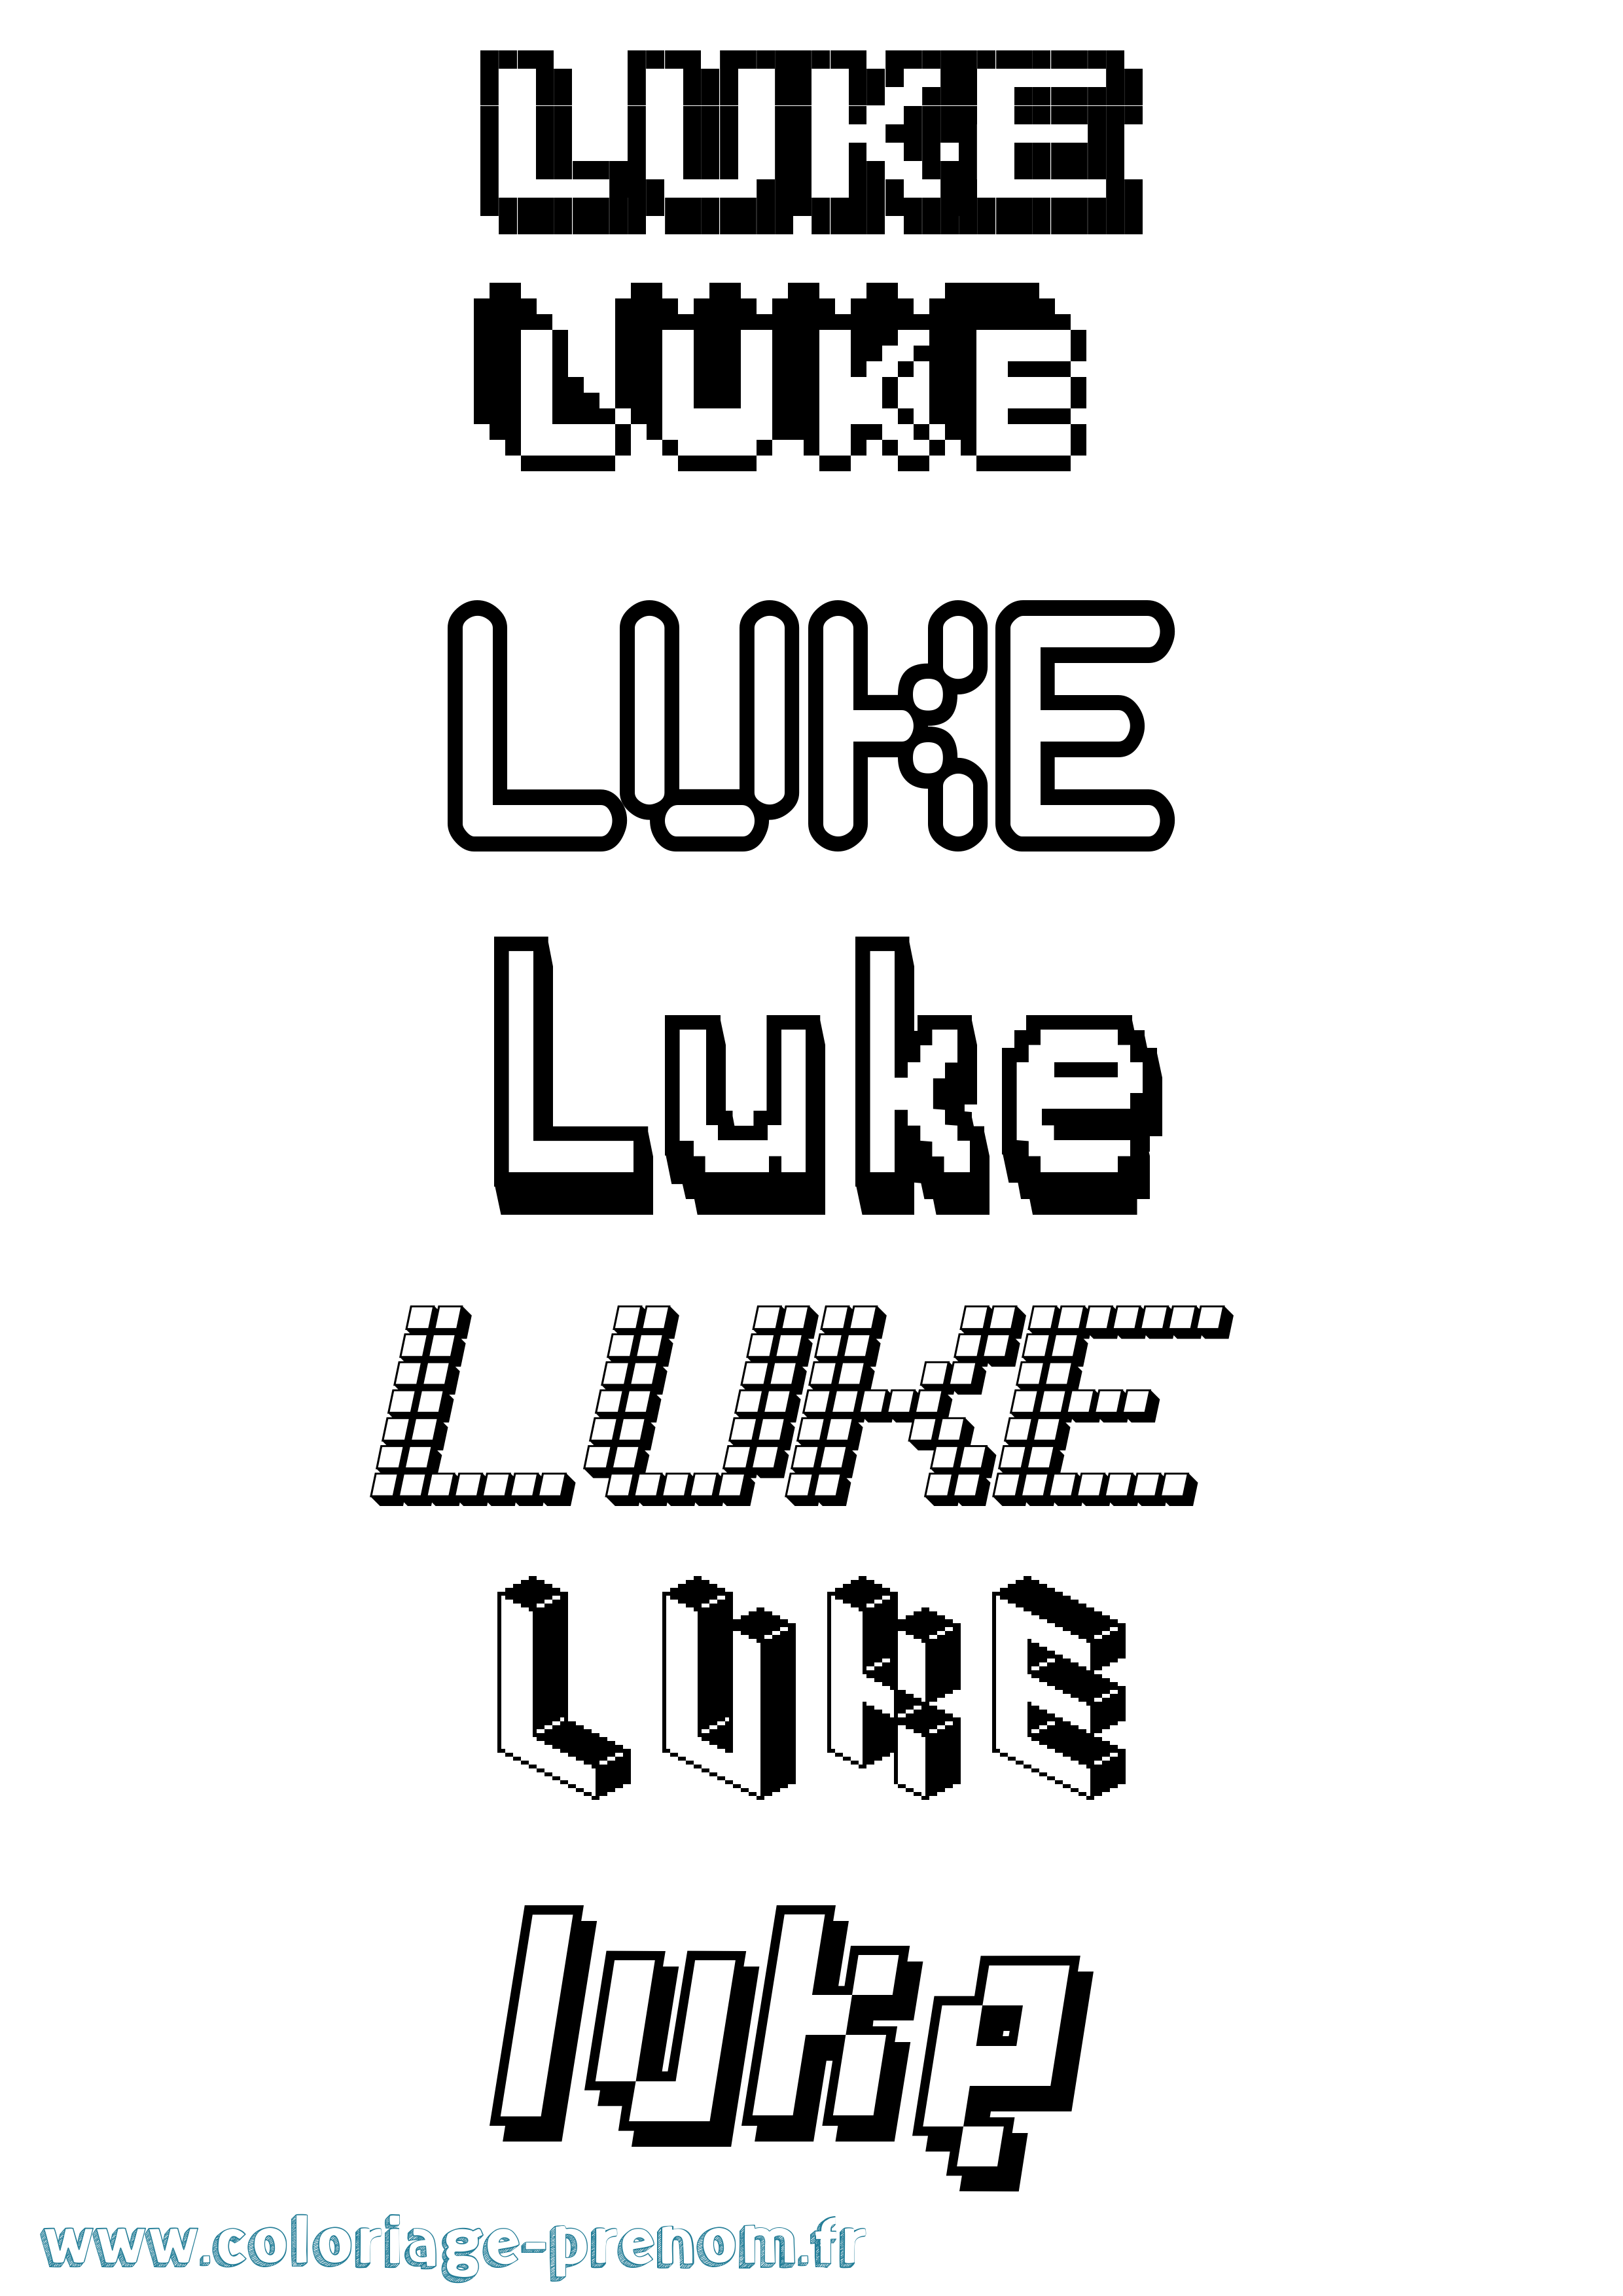 Coloriage prénom Luke Pixel